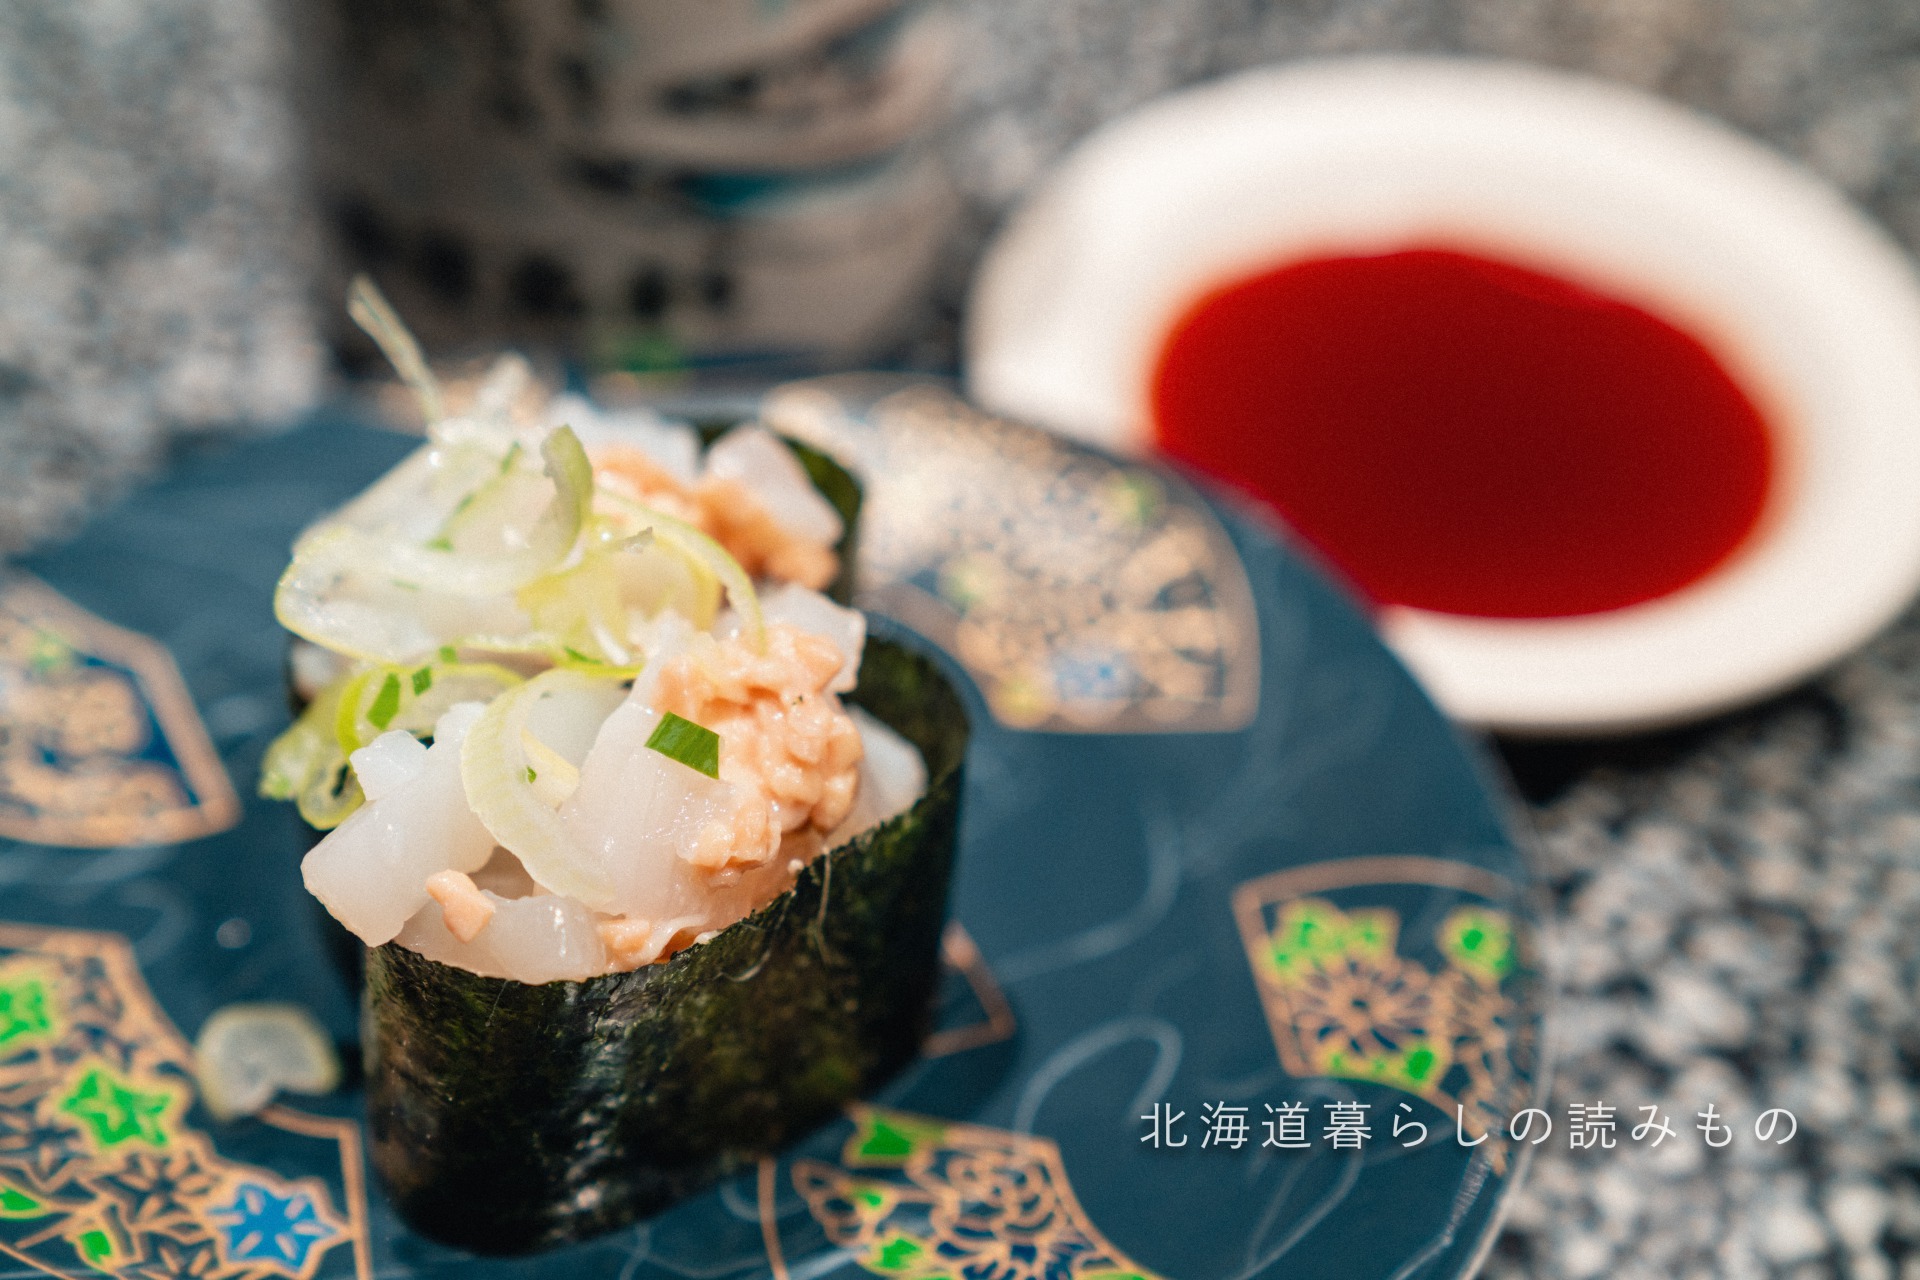 回転寿司 根室花まるのメニュー「いか納豆」の写真